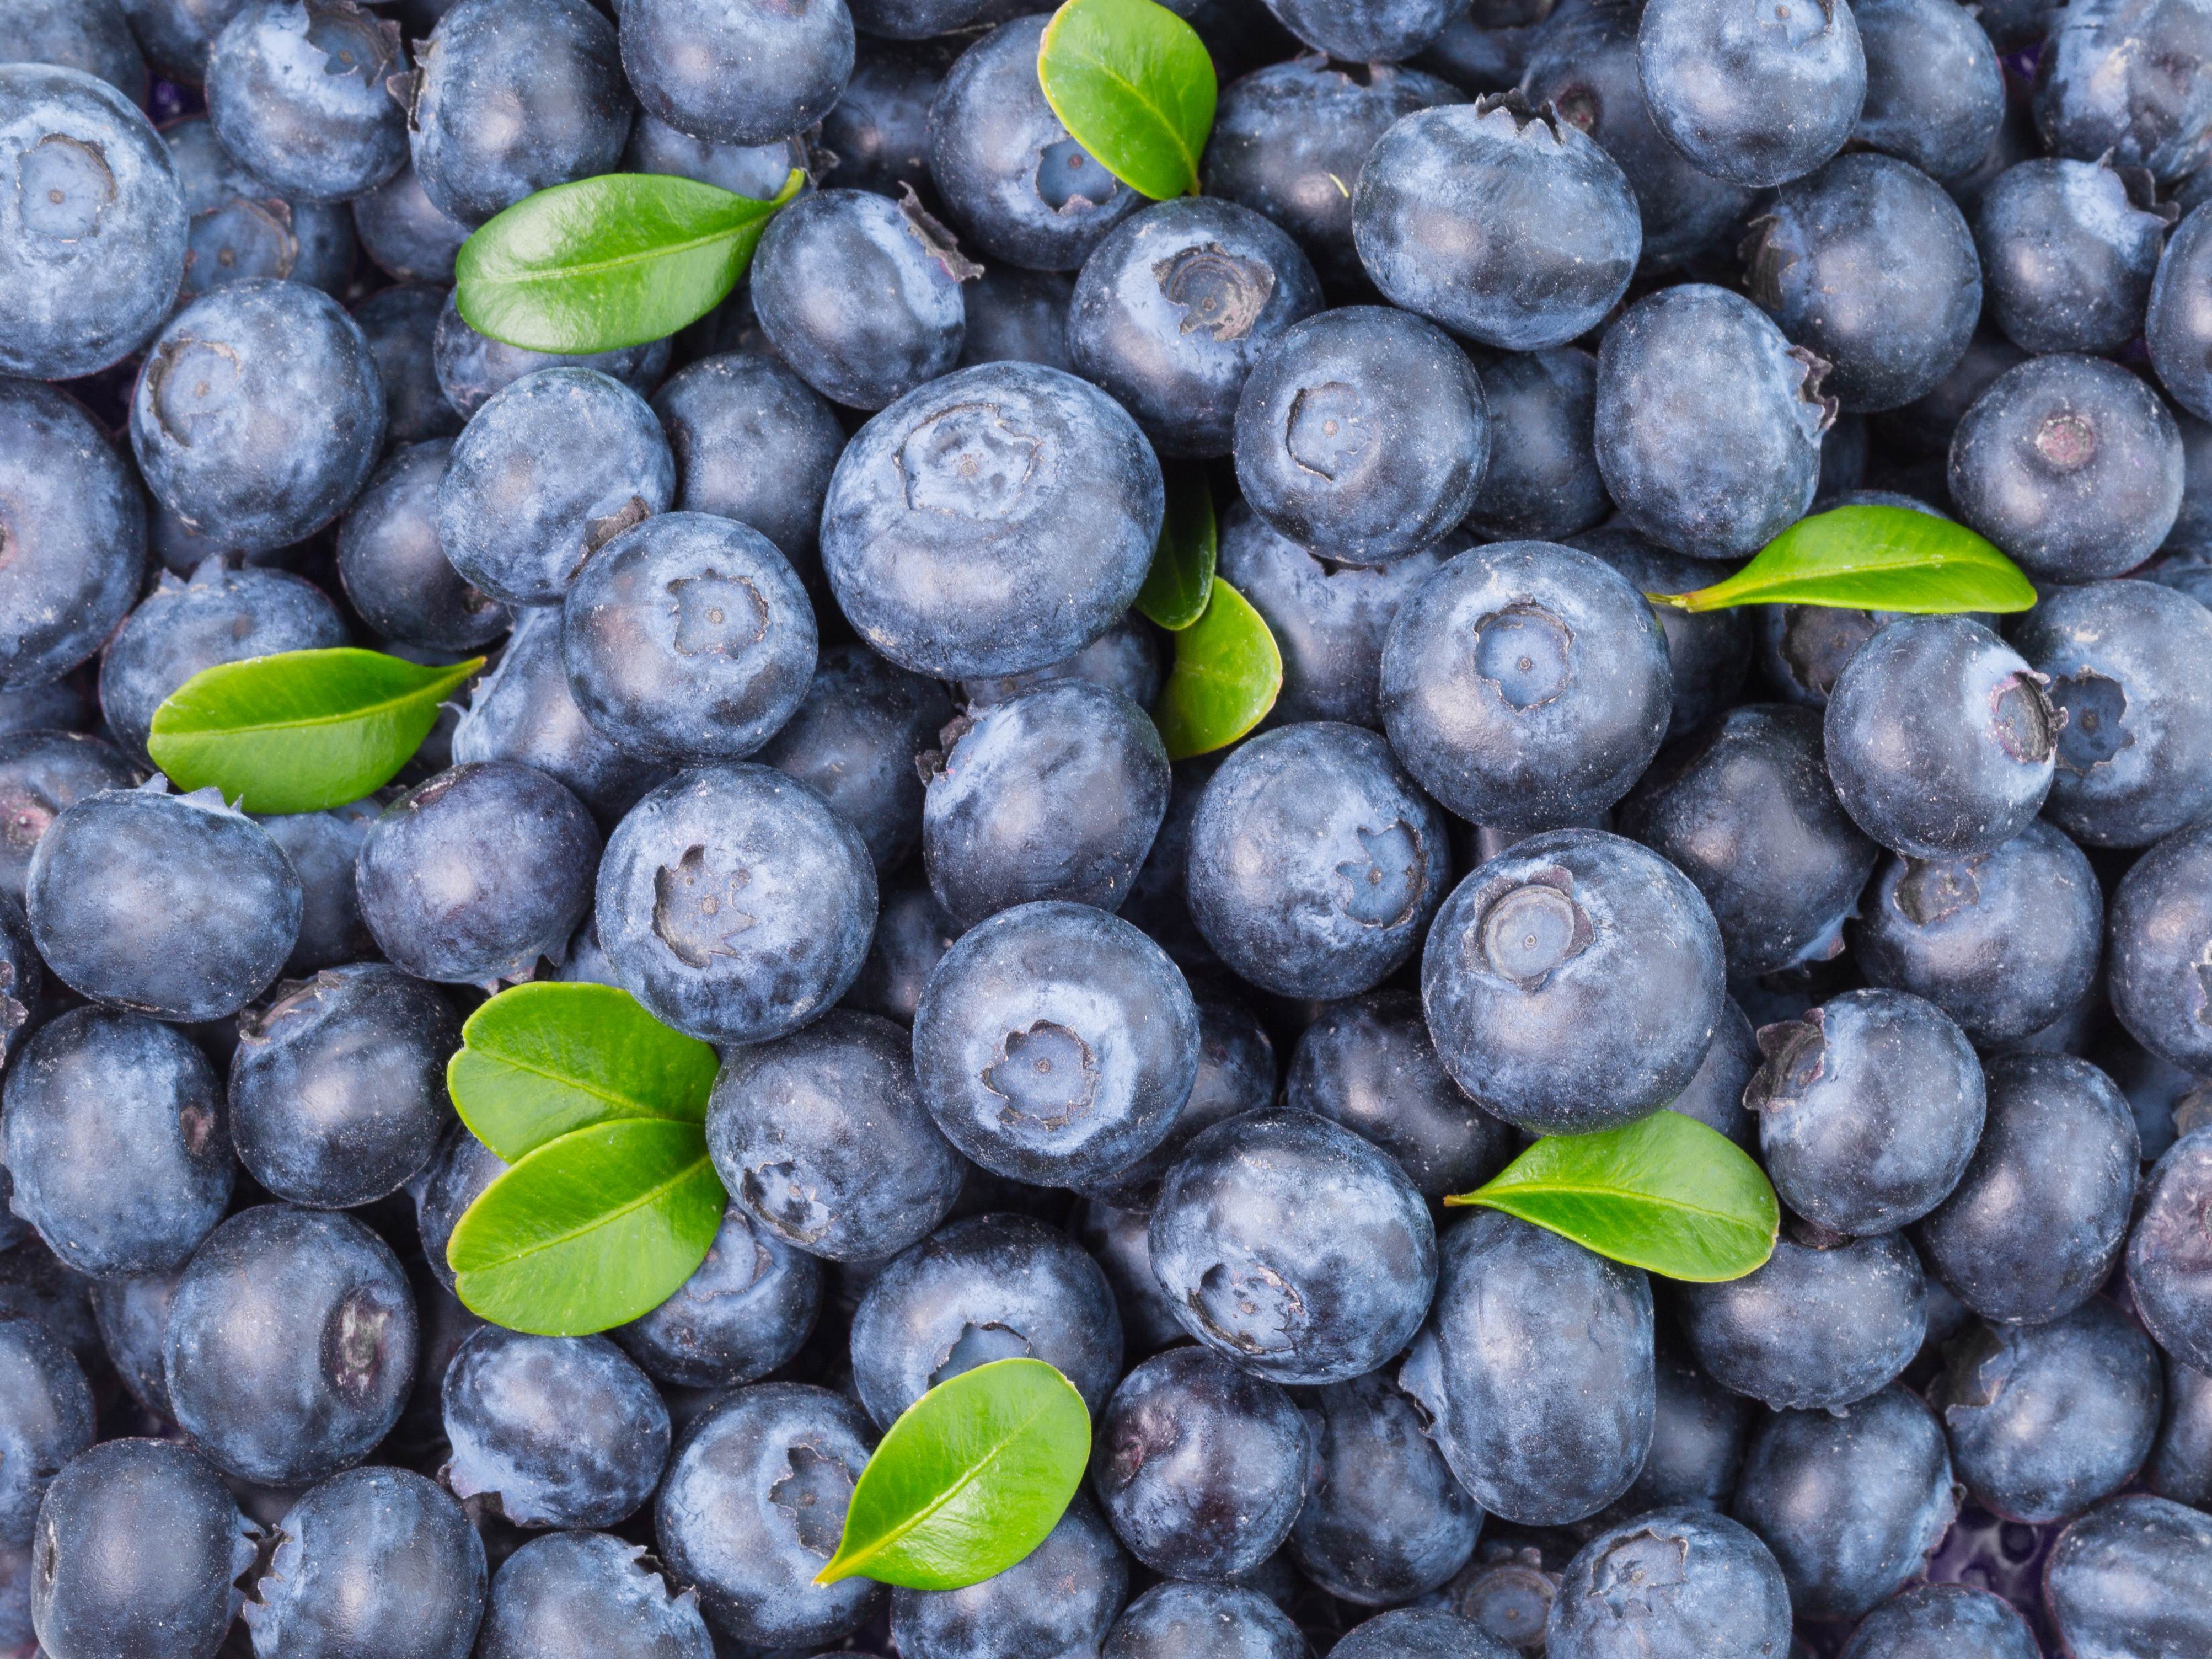 pile of fresh blueberries